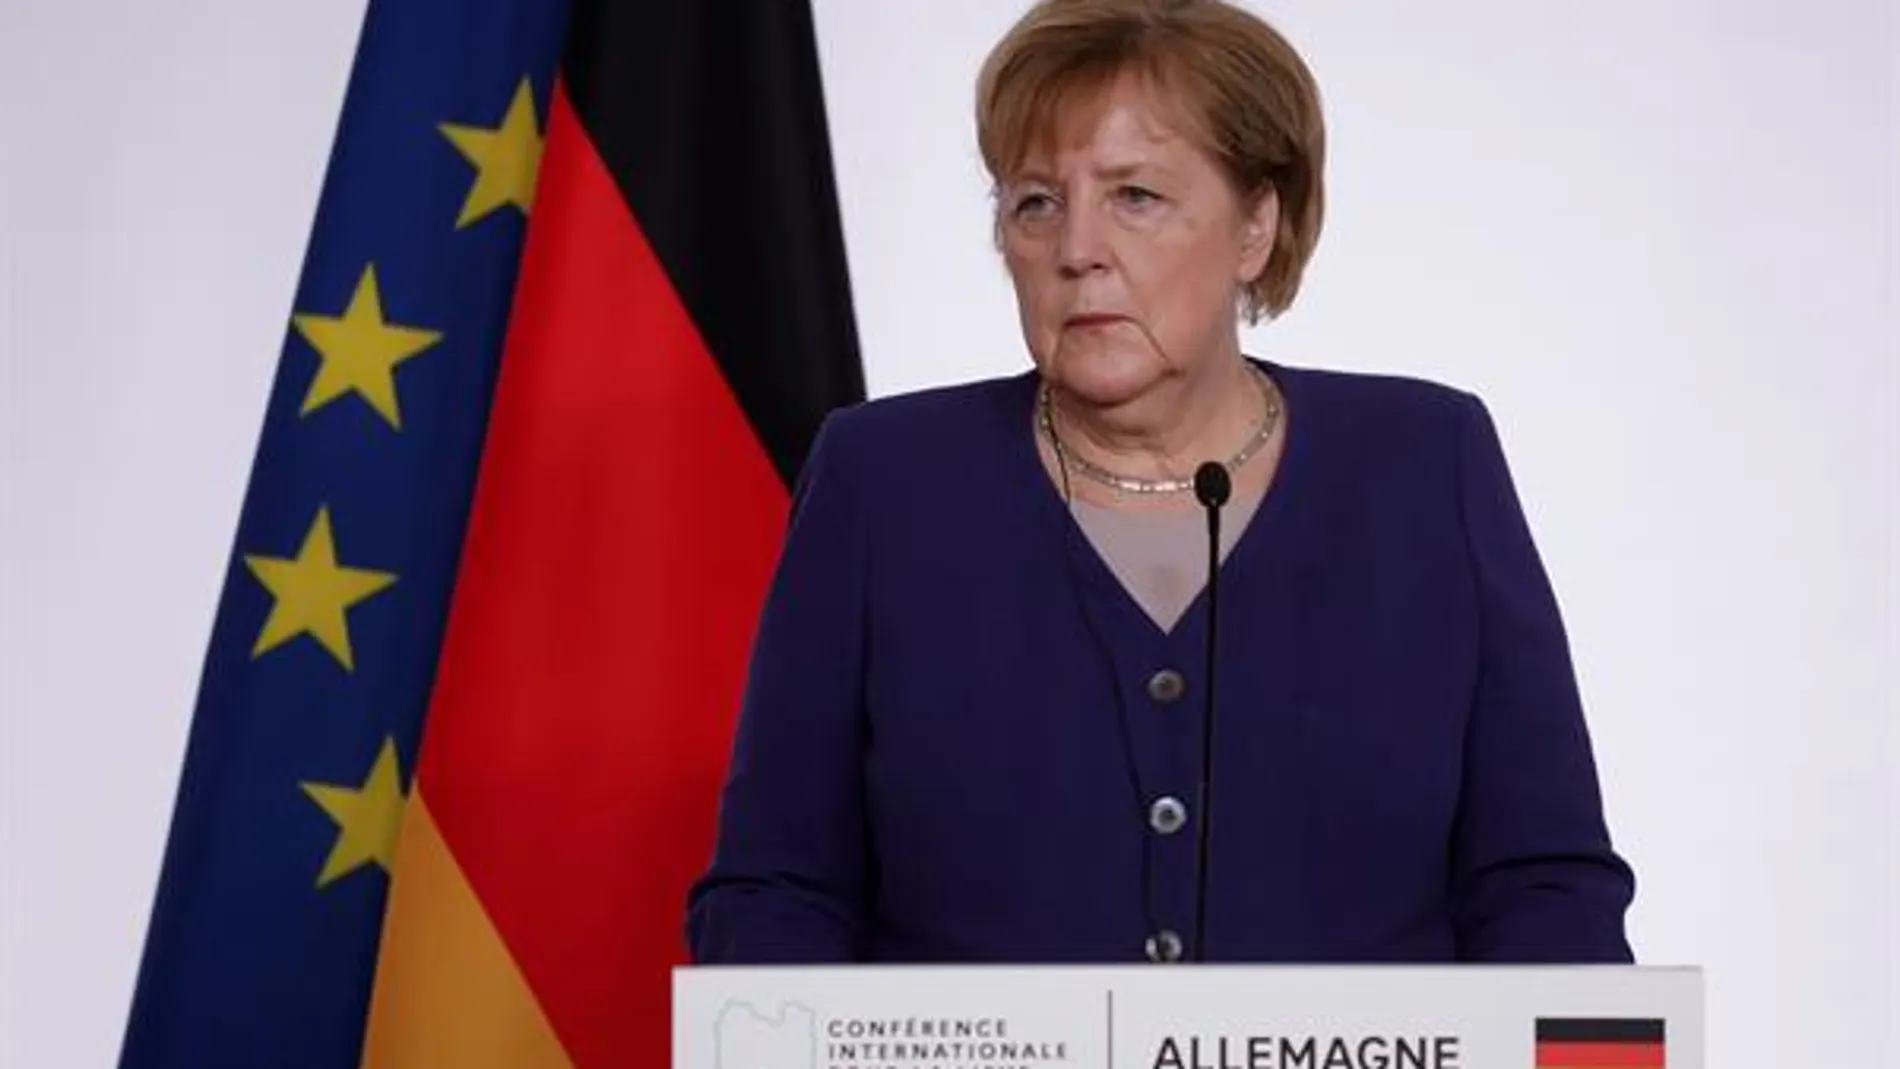 Alemania, "en situación de emergencia" por el coronavirus y Merkel urge la necesidad de fijar un umbral de hospitalizaciones para imponer restricciones